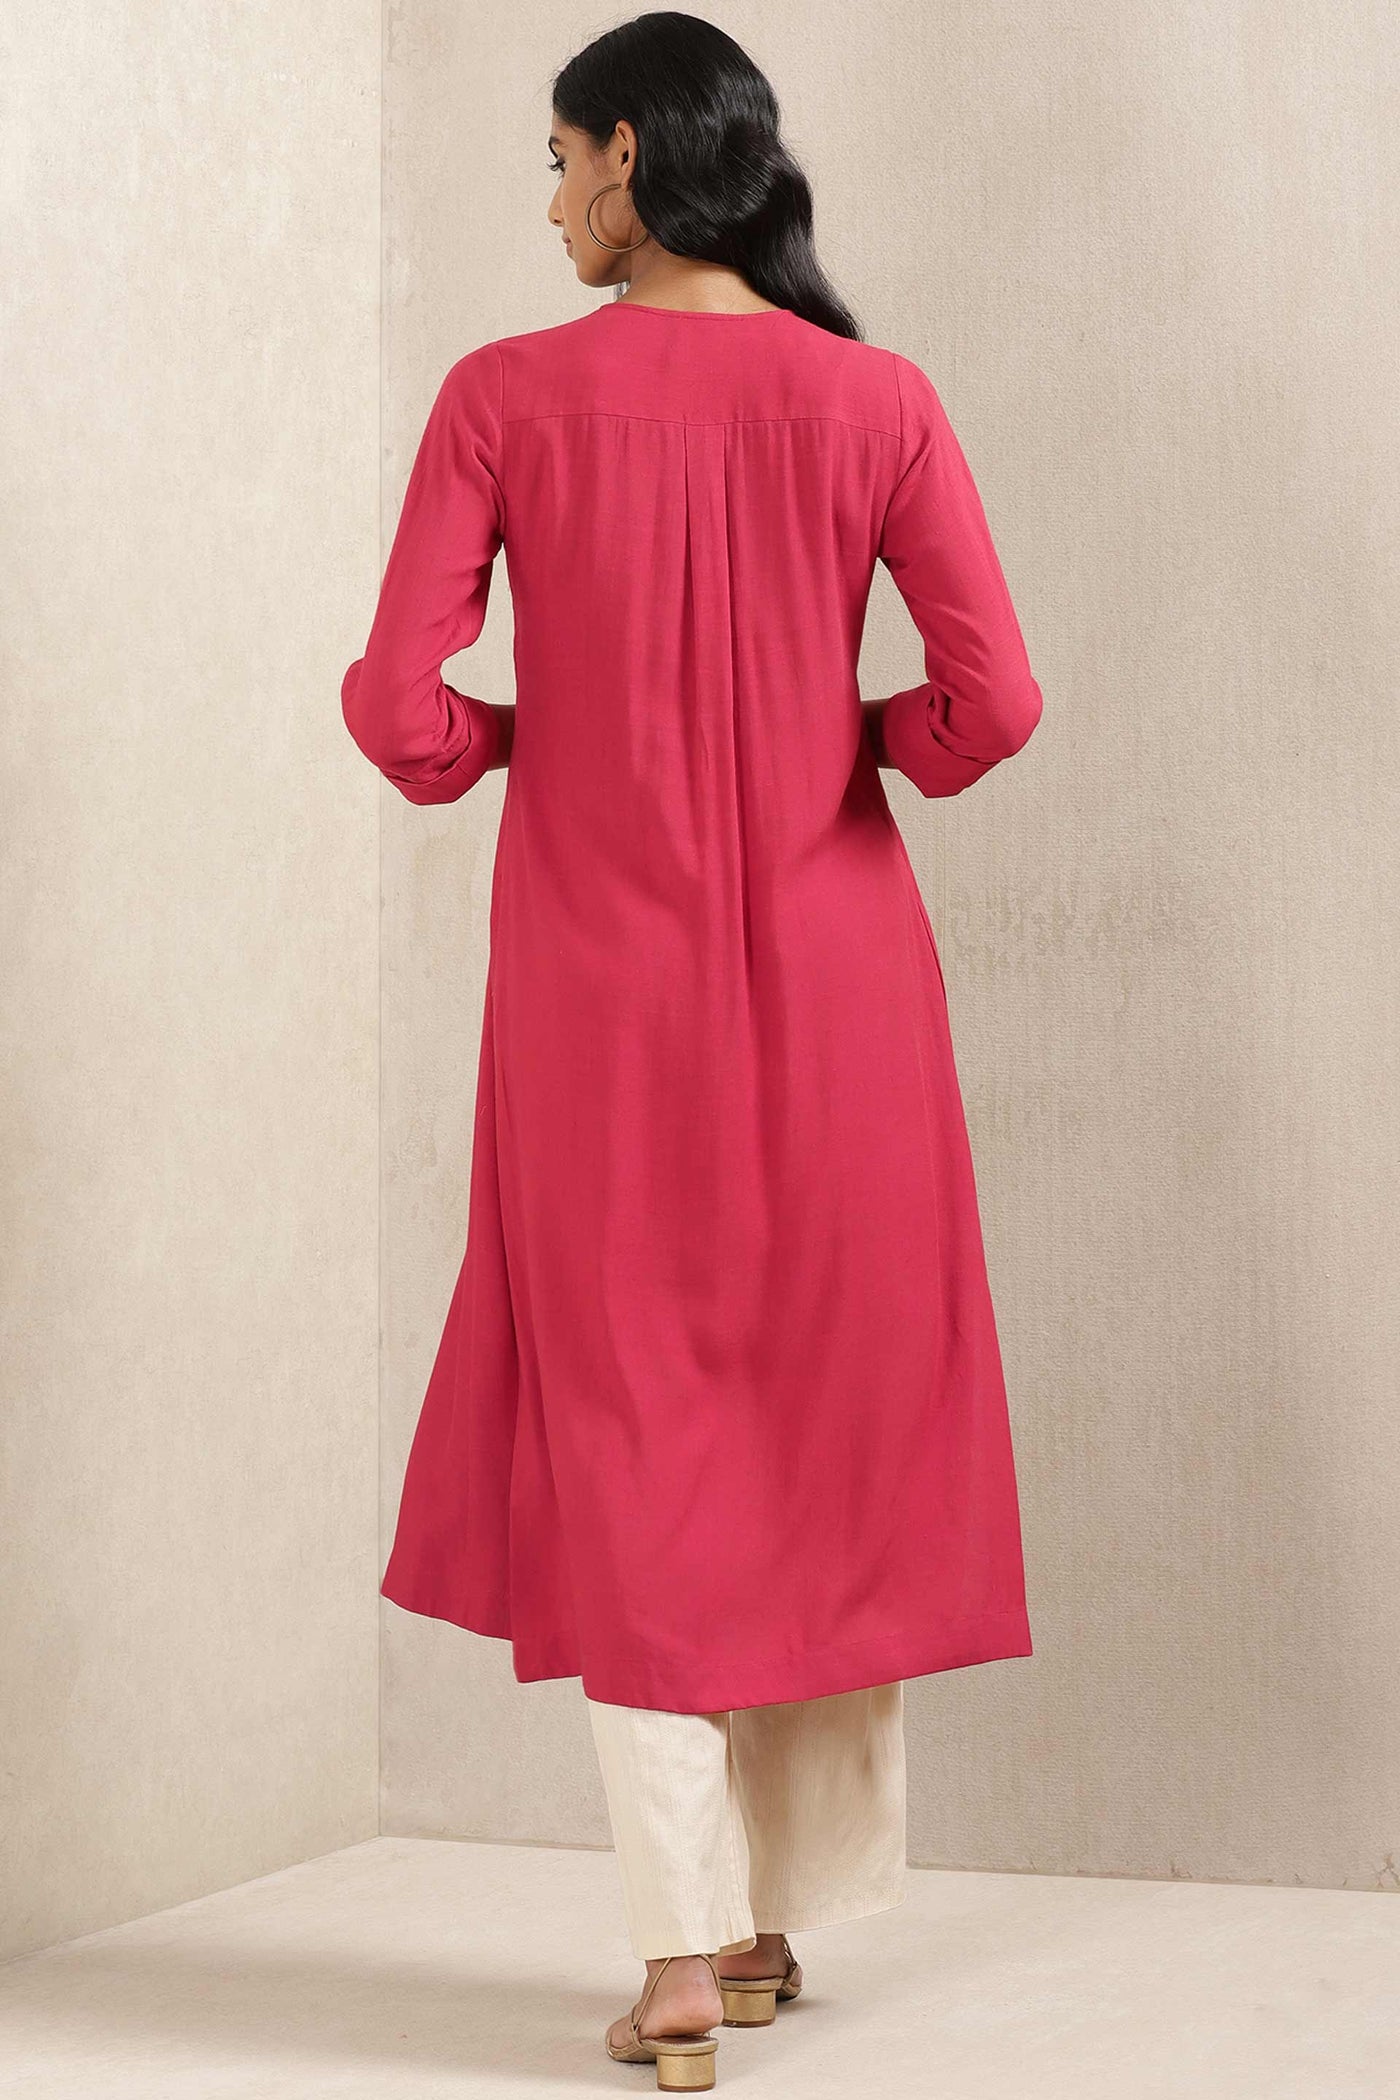 ritu kumar Red Embroidered Kurta online shopping melange singapore indian designer wear